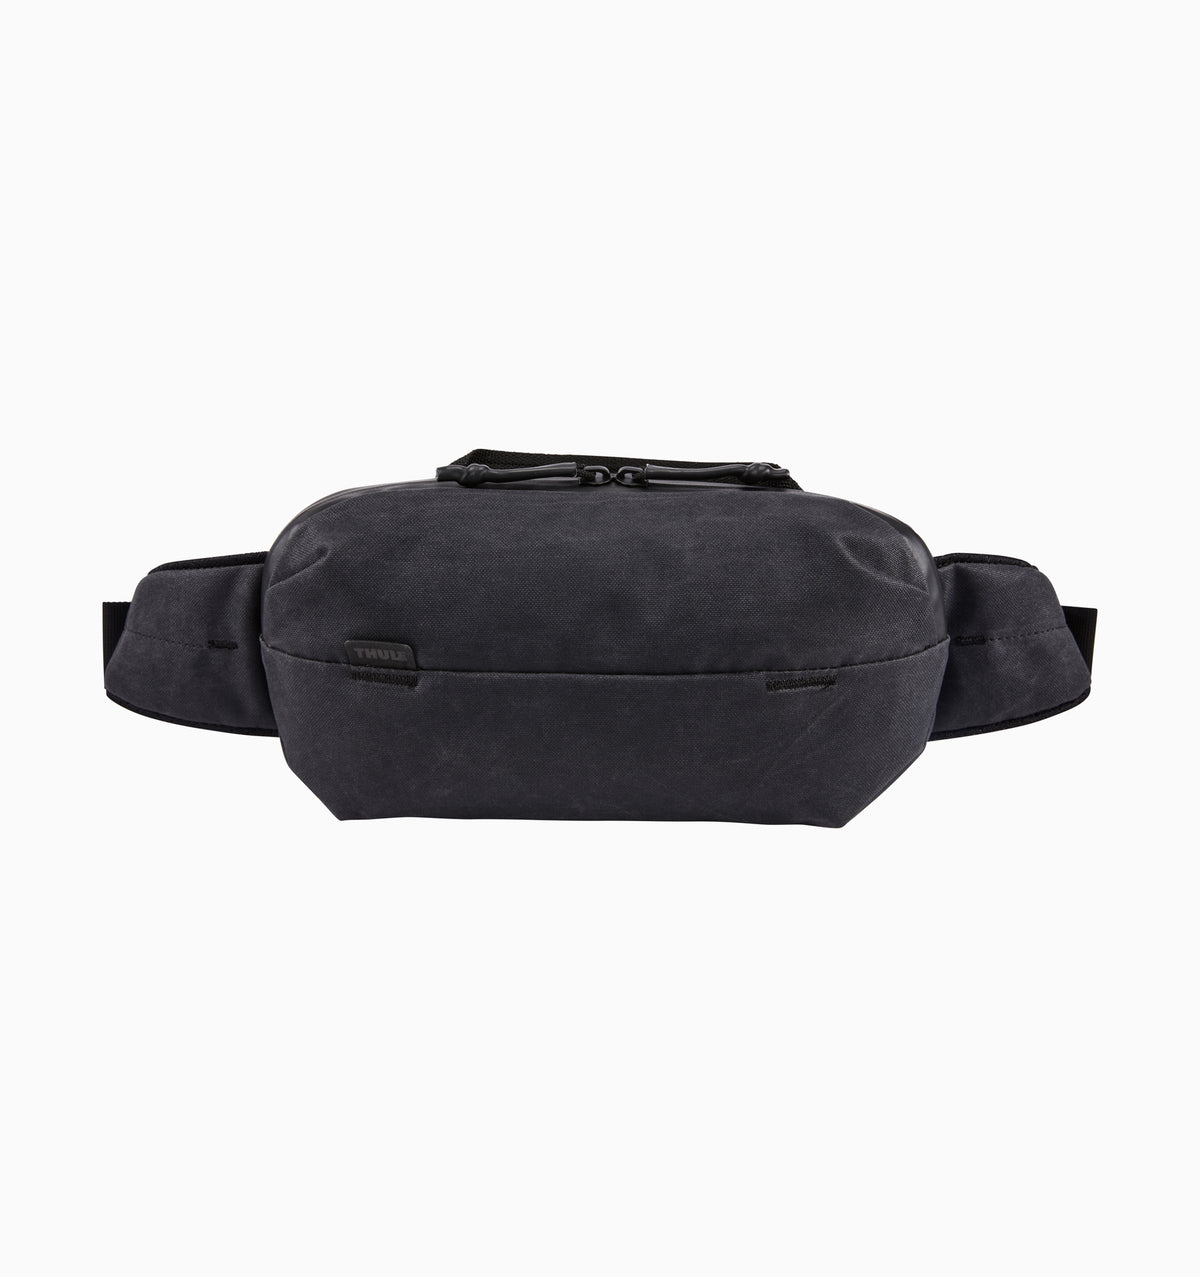 Thule - Aion - Sling Bag 2L - Black